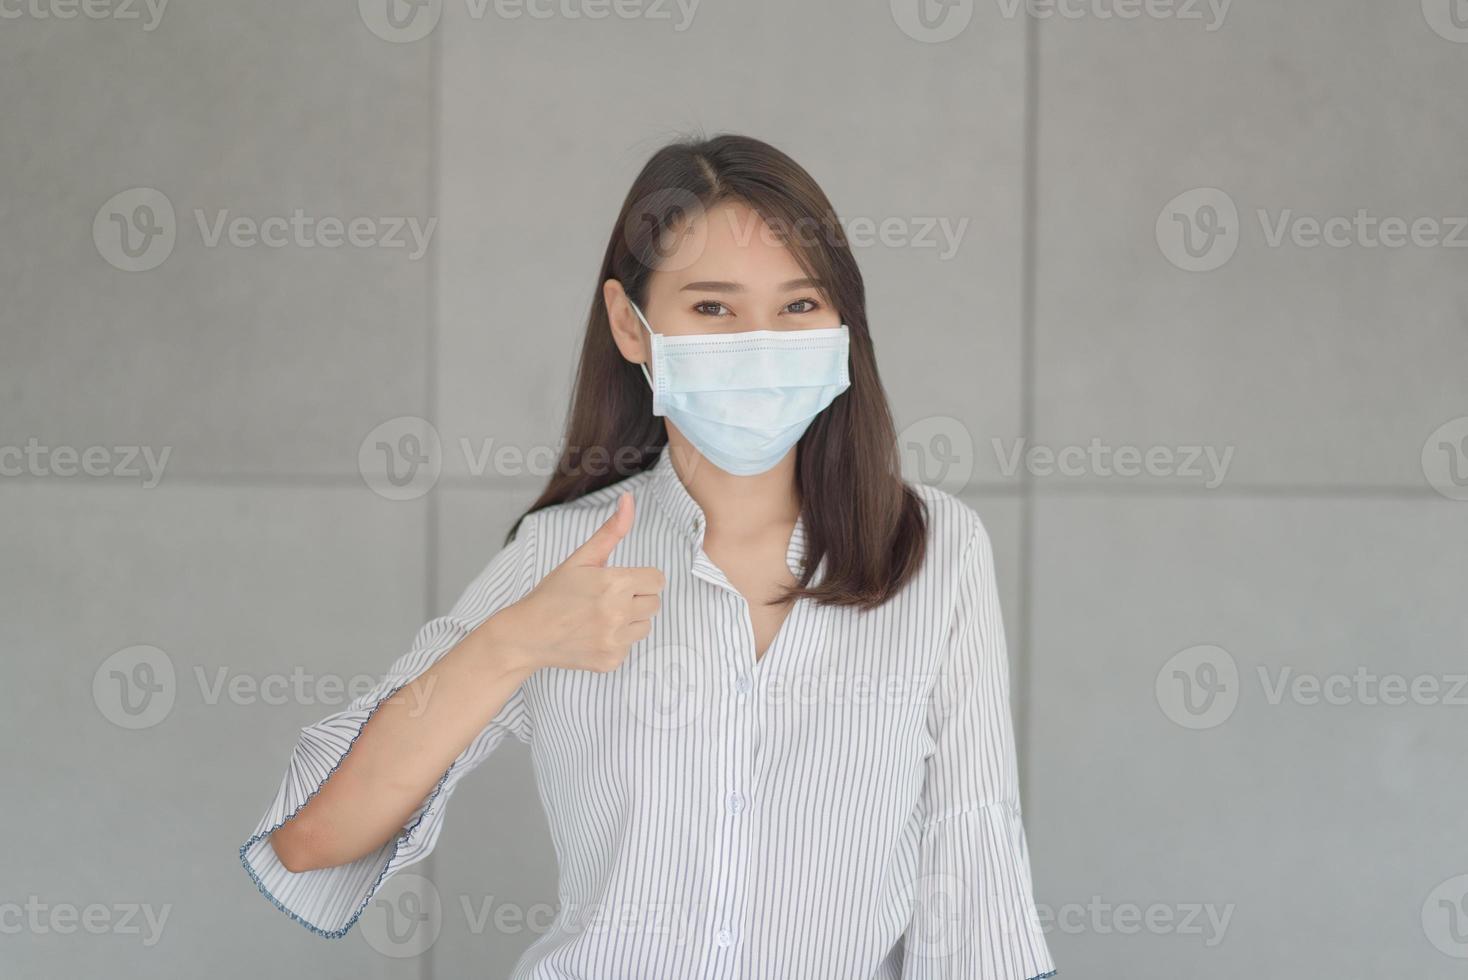 Empleado de negocios que usa máscara durante el trabajo en la oficina para mantener la higiene siguiendo la política de la empresa. preventivo durante el período de epidemia de coronavirus o covid19. foto